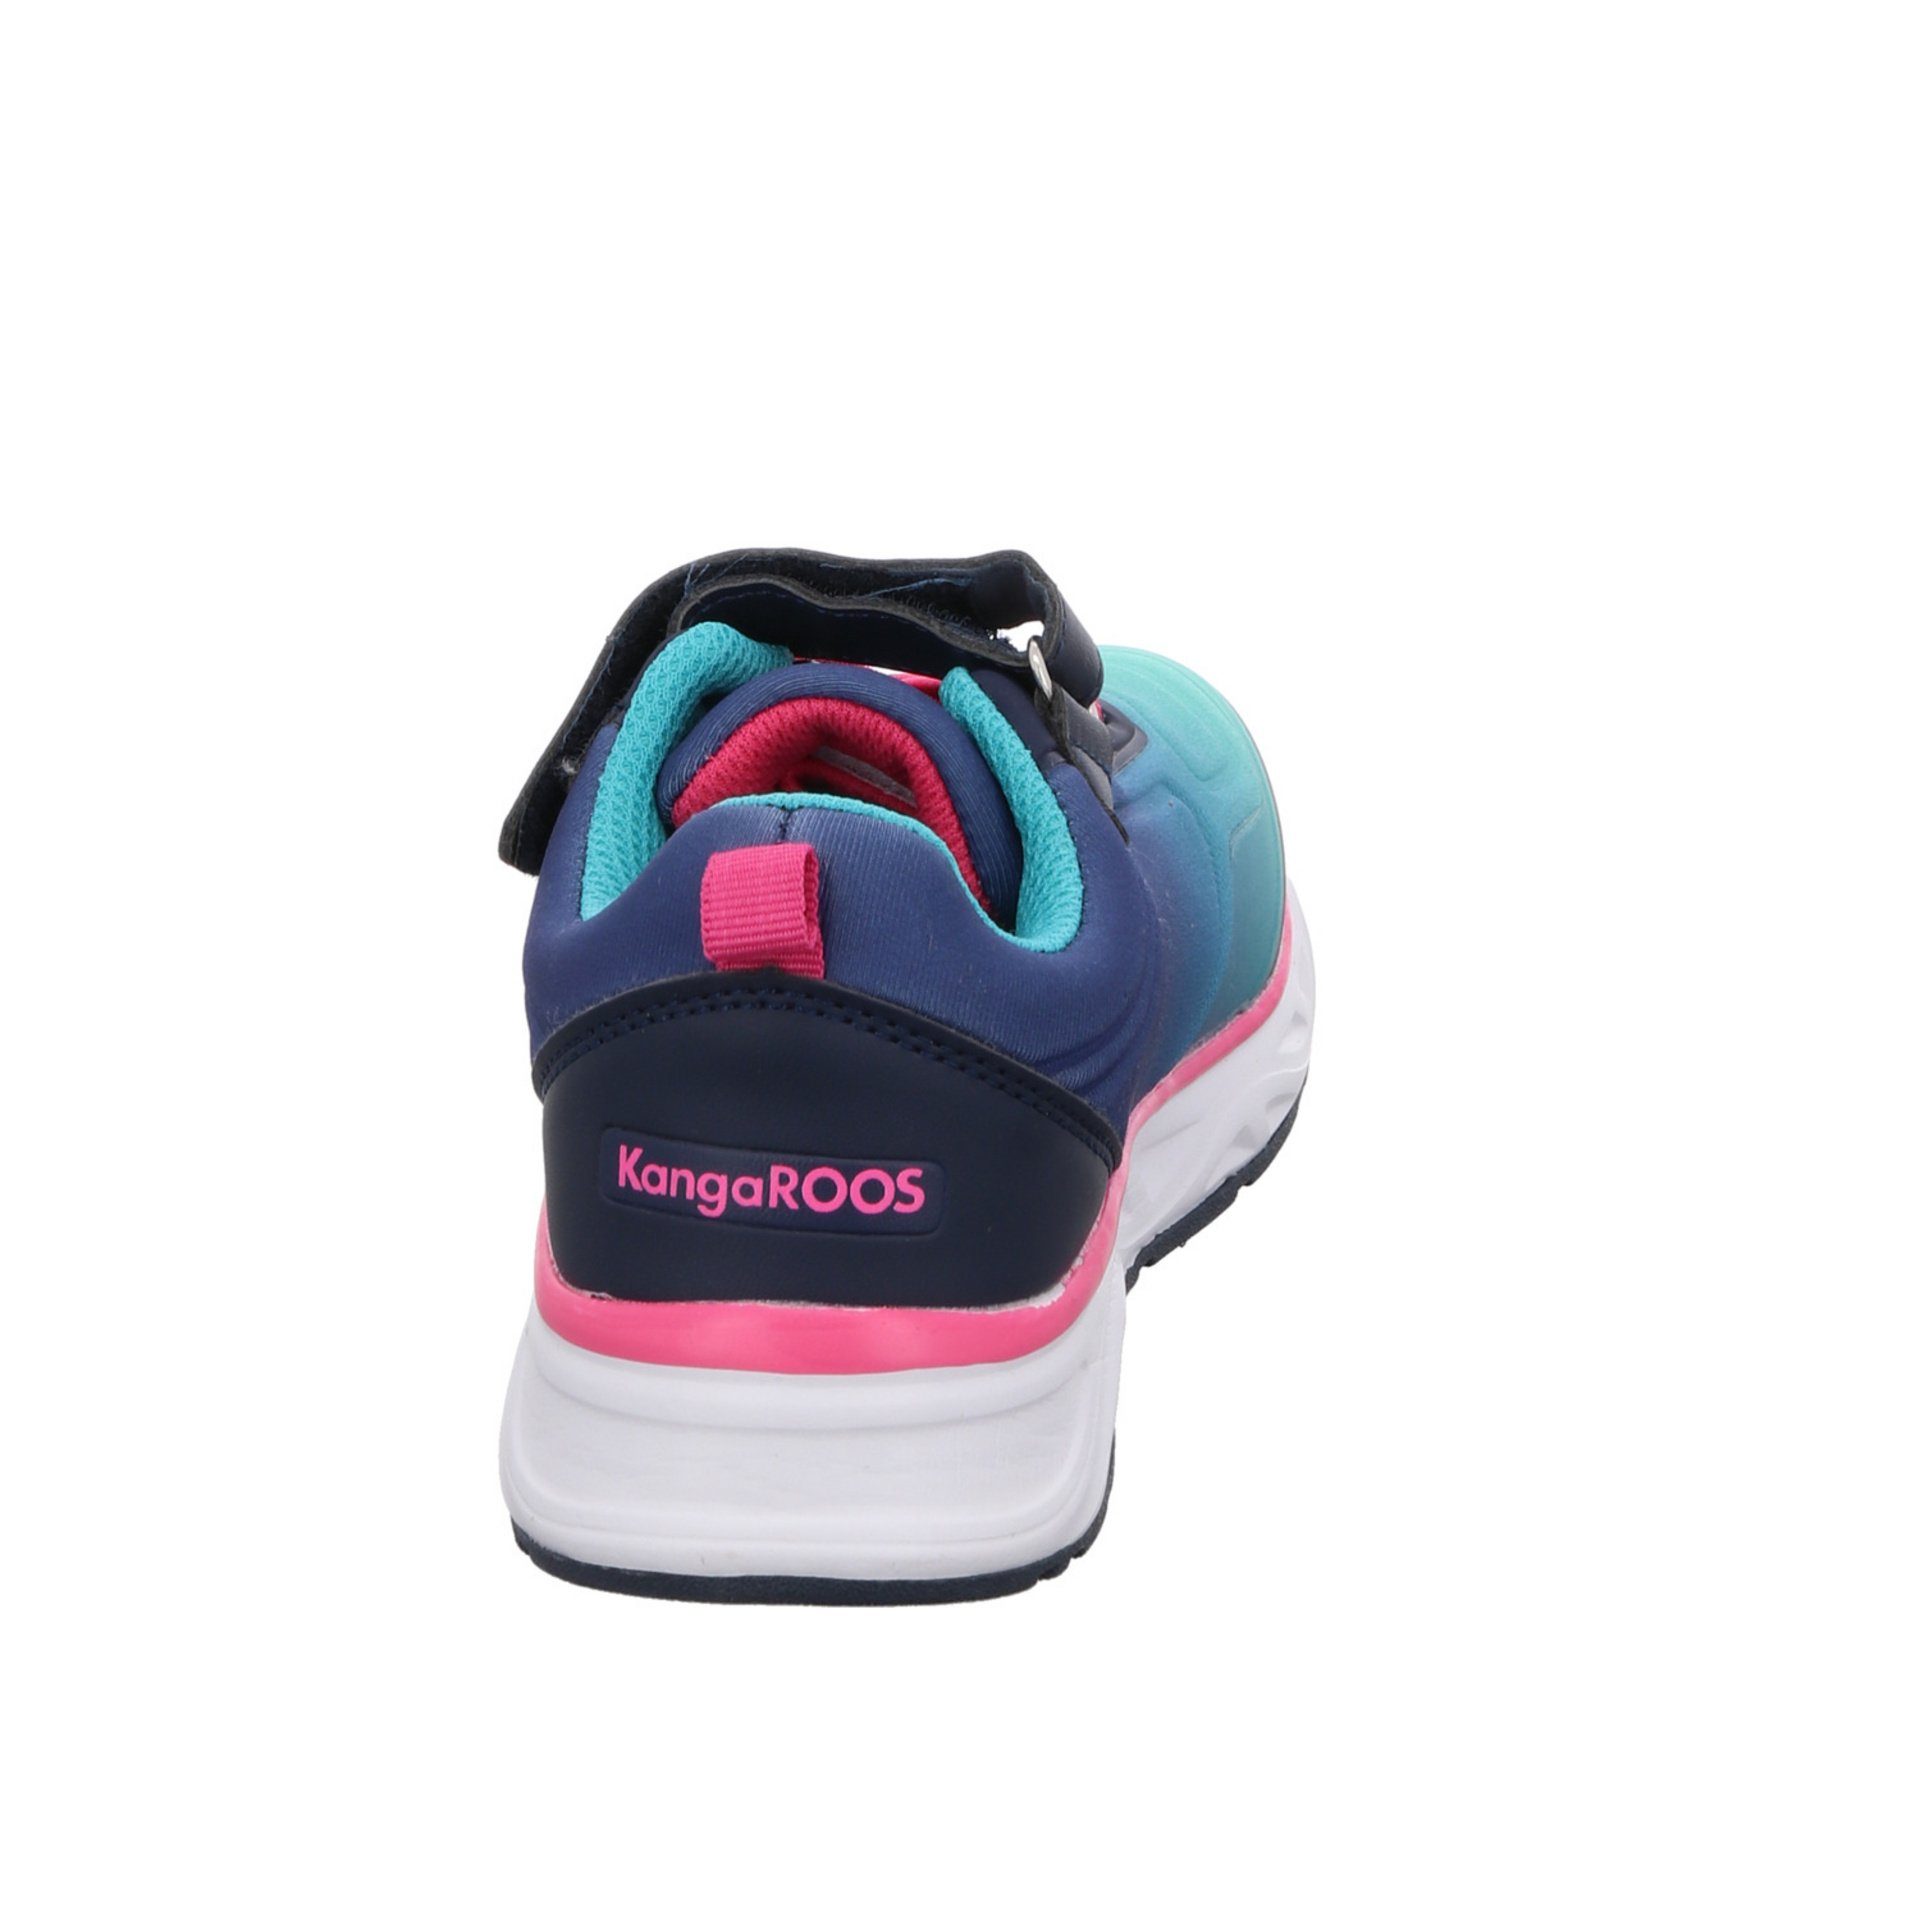 Sneaker Logoschriftzug KangaROOS navy/daisy/pink K-OK Airos Synthetikkombination Sneaker